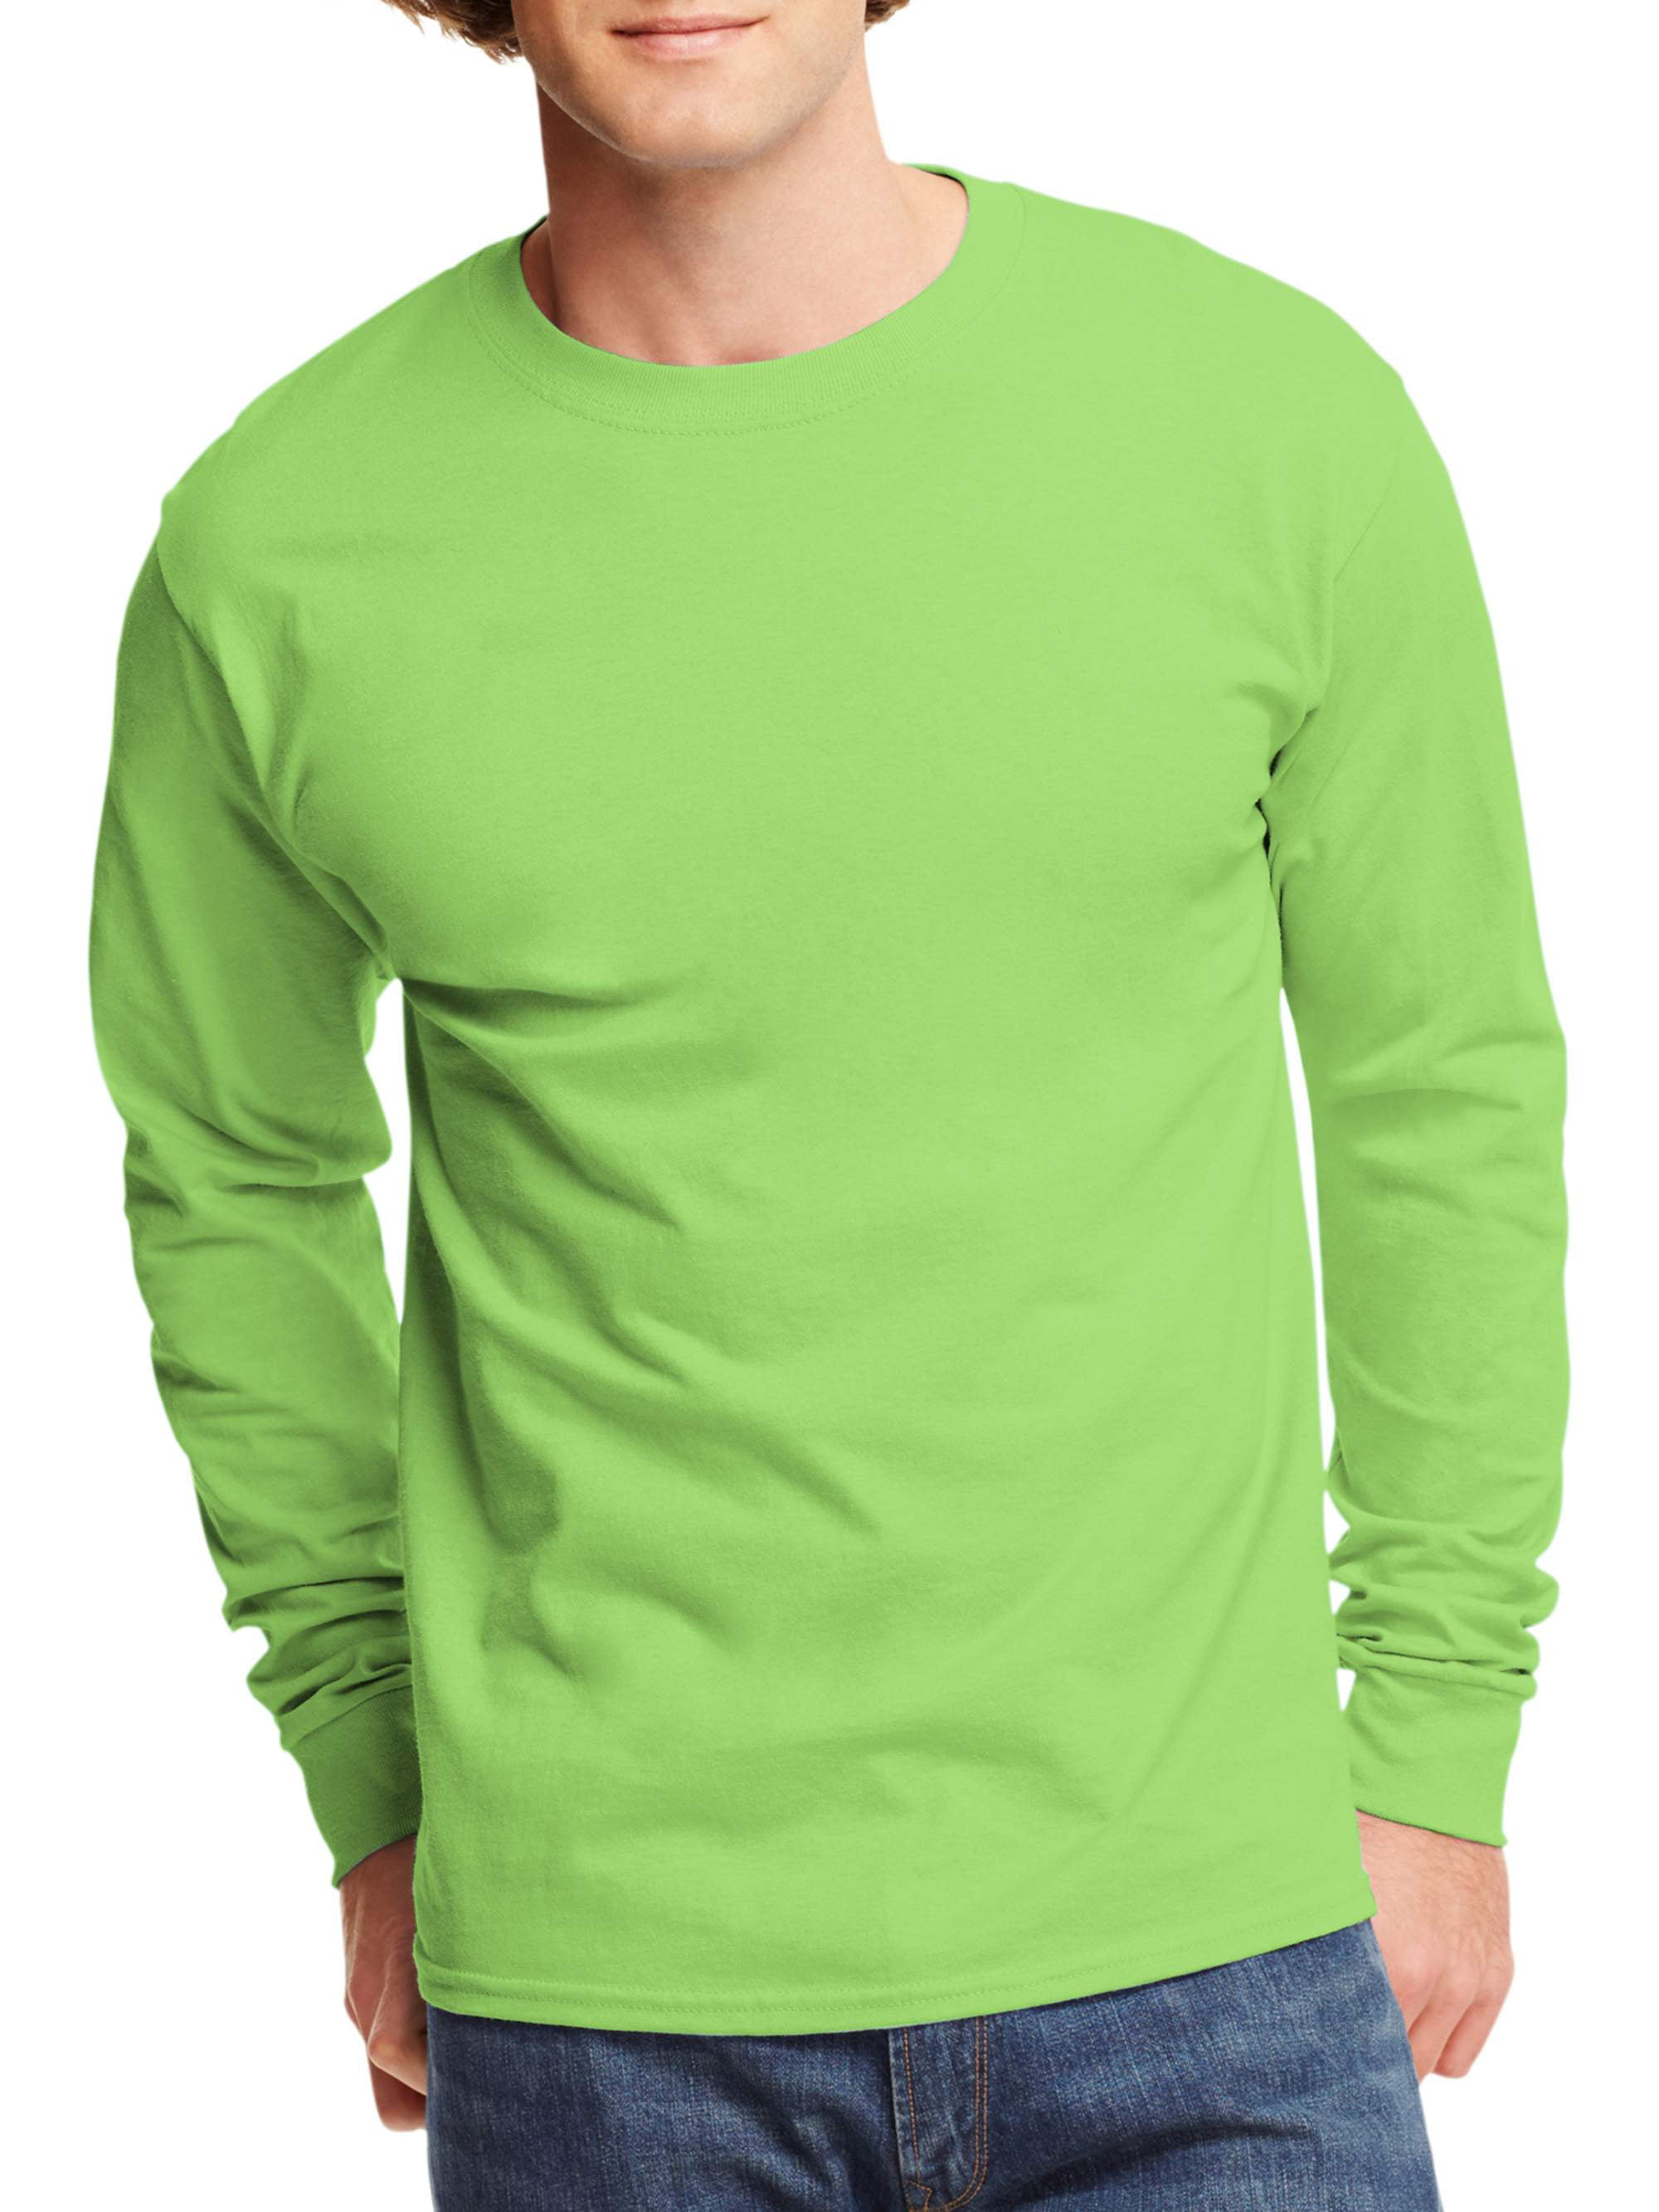 long sleeve green t shirt